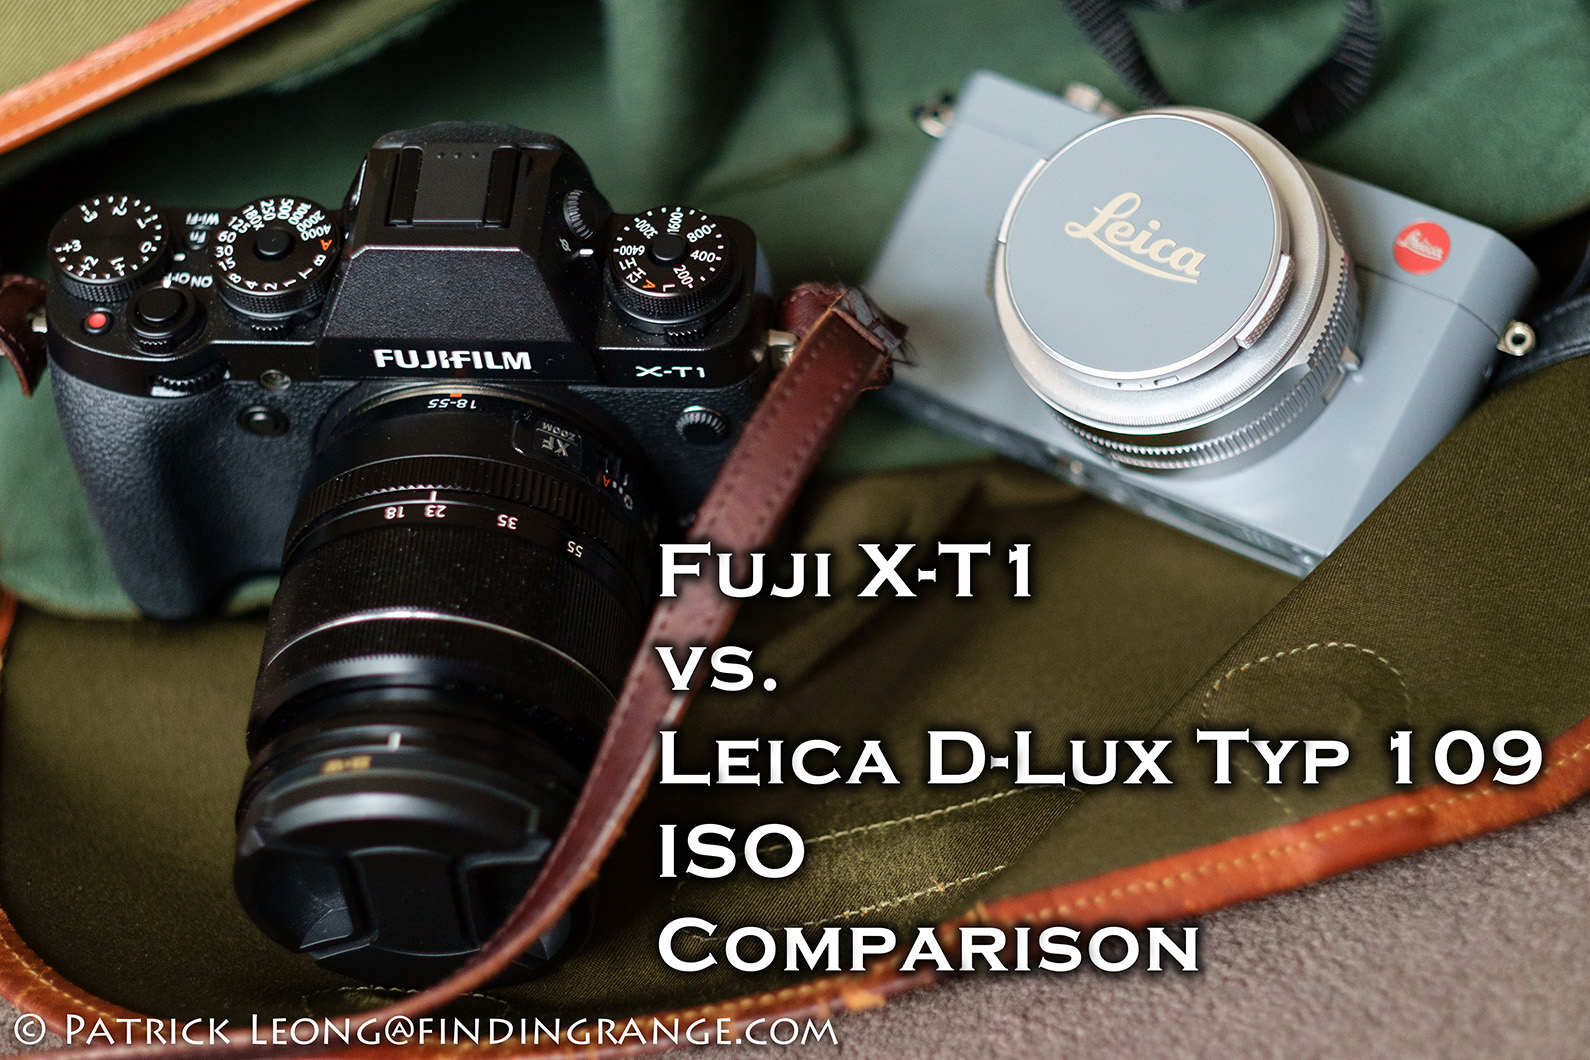 Fuji X-T1 vs. Leica D-Lux Typ 109 ISO Comparison